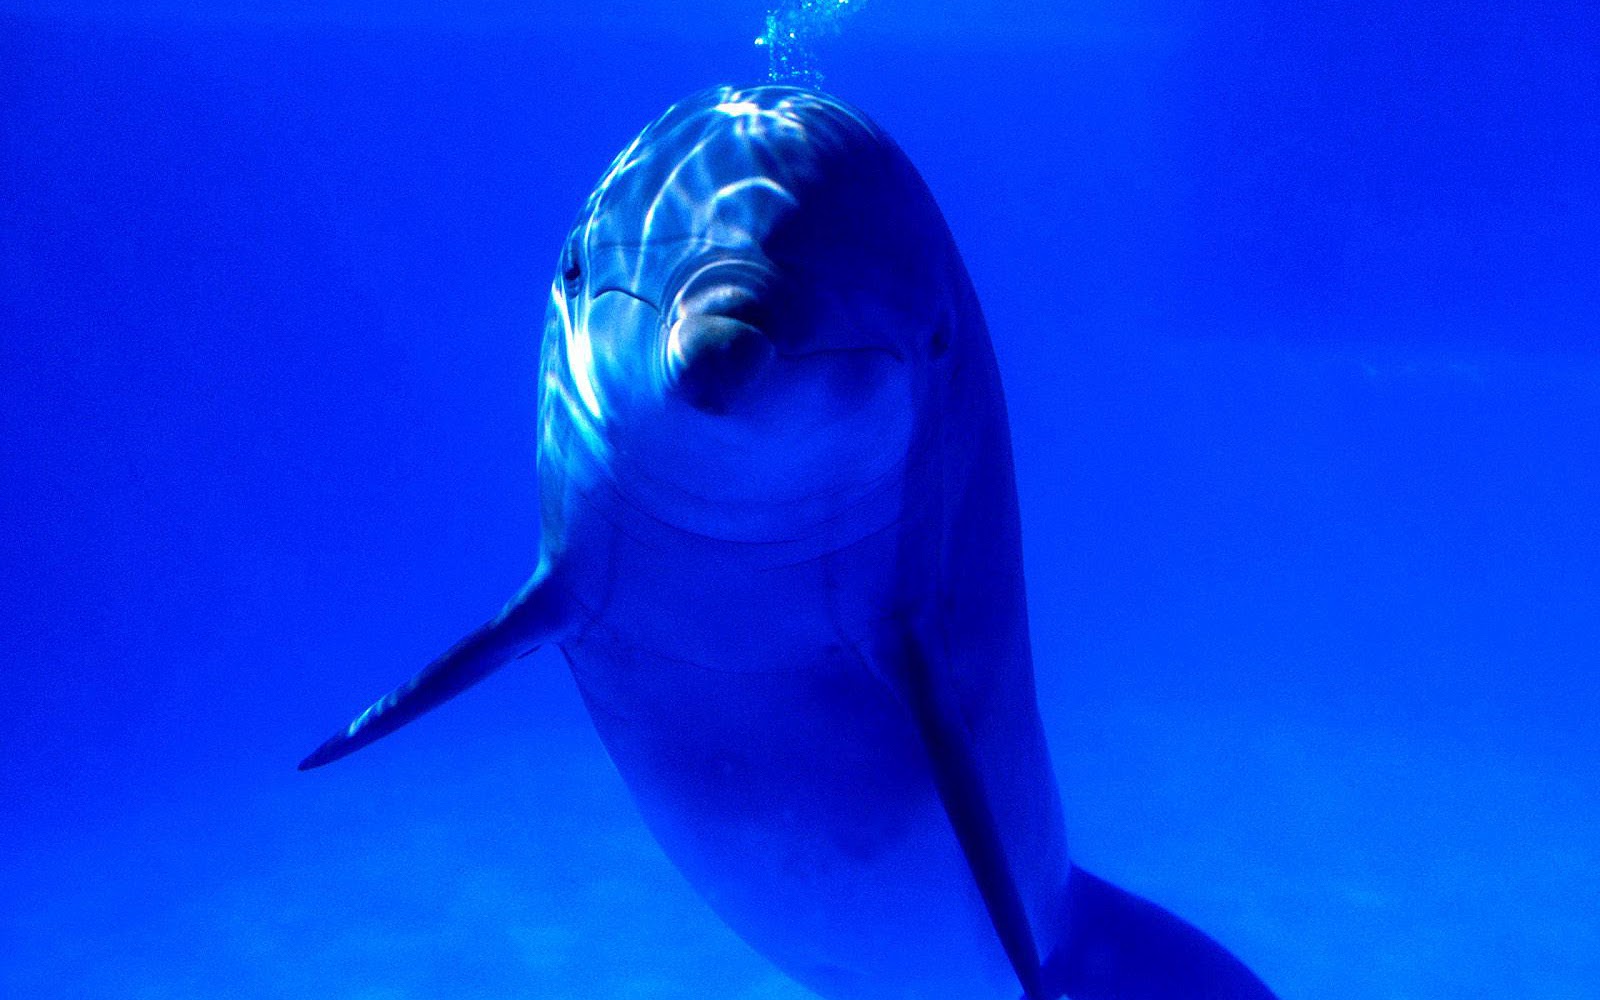 http://4.bp.blogspot.com/-fpJormg1tq4/UBrMyUNAugI/AAAAAAAAERs/n6A4U7o9NAY/s1600/hd-dolfijnen-achtergrond-met-een-dolfijn-onderwater-kijkend-naar-de-camera-hd-dolfijn-wallpaper.jpg